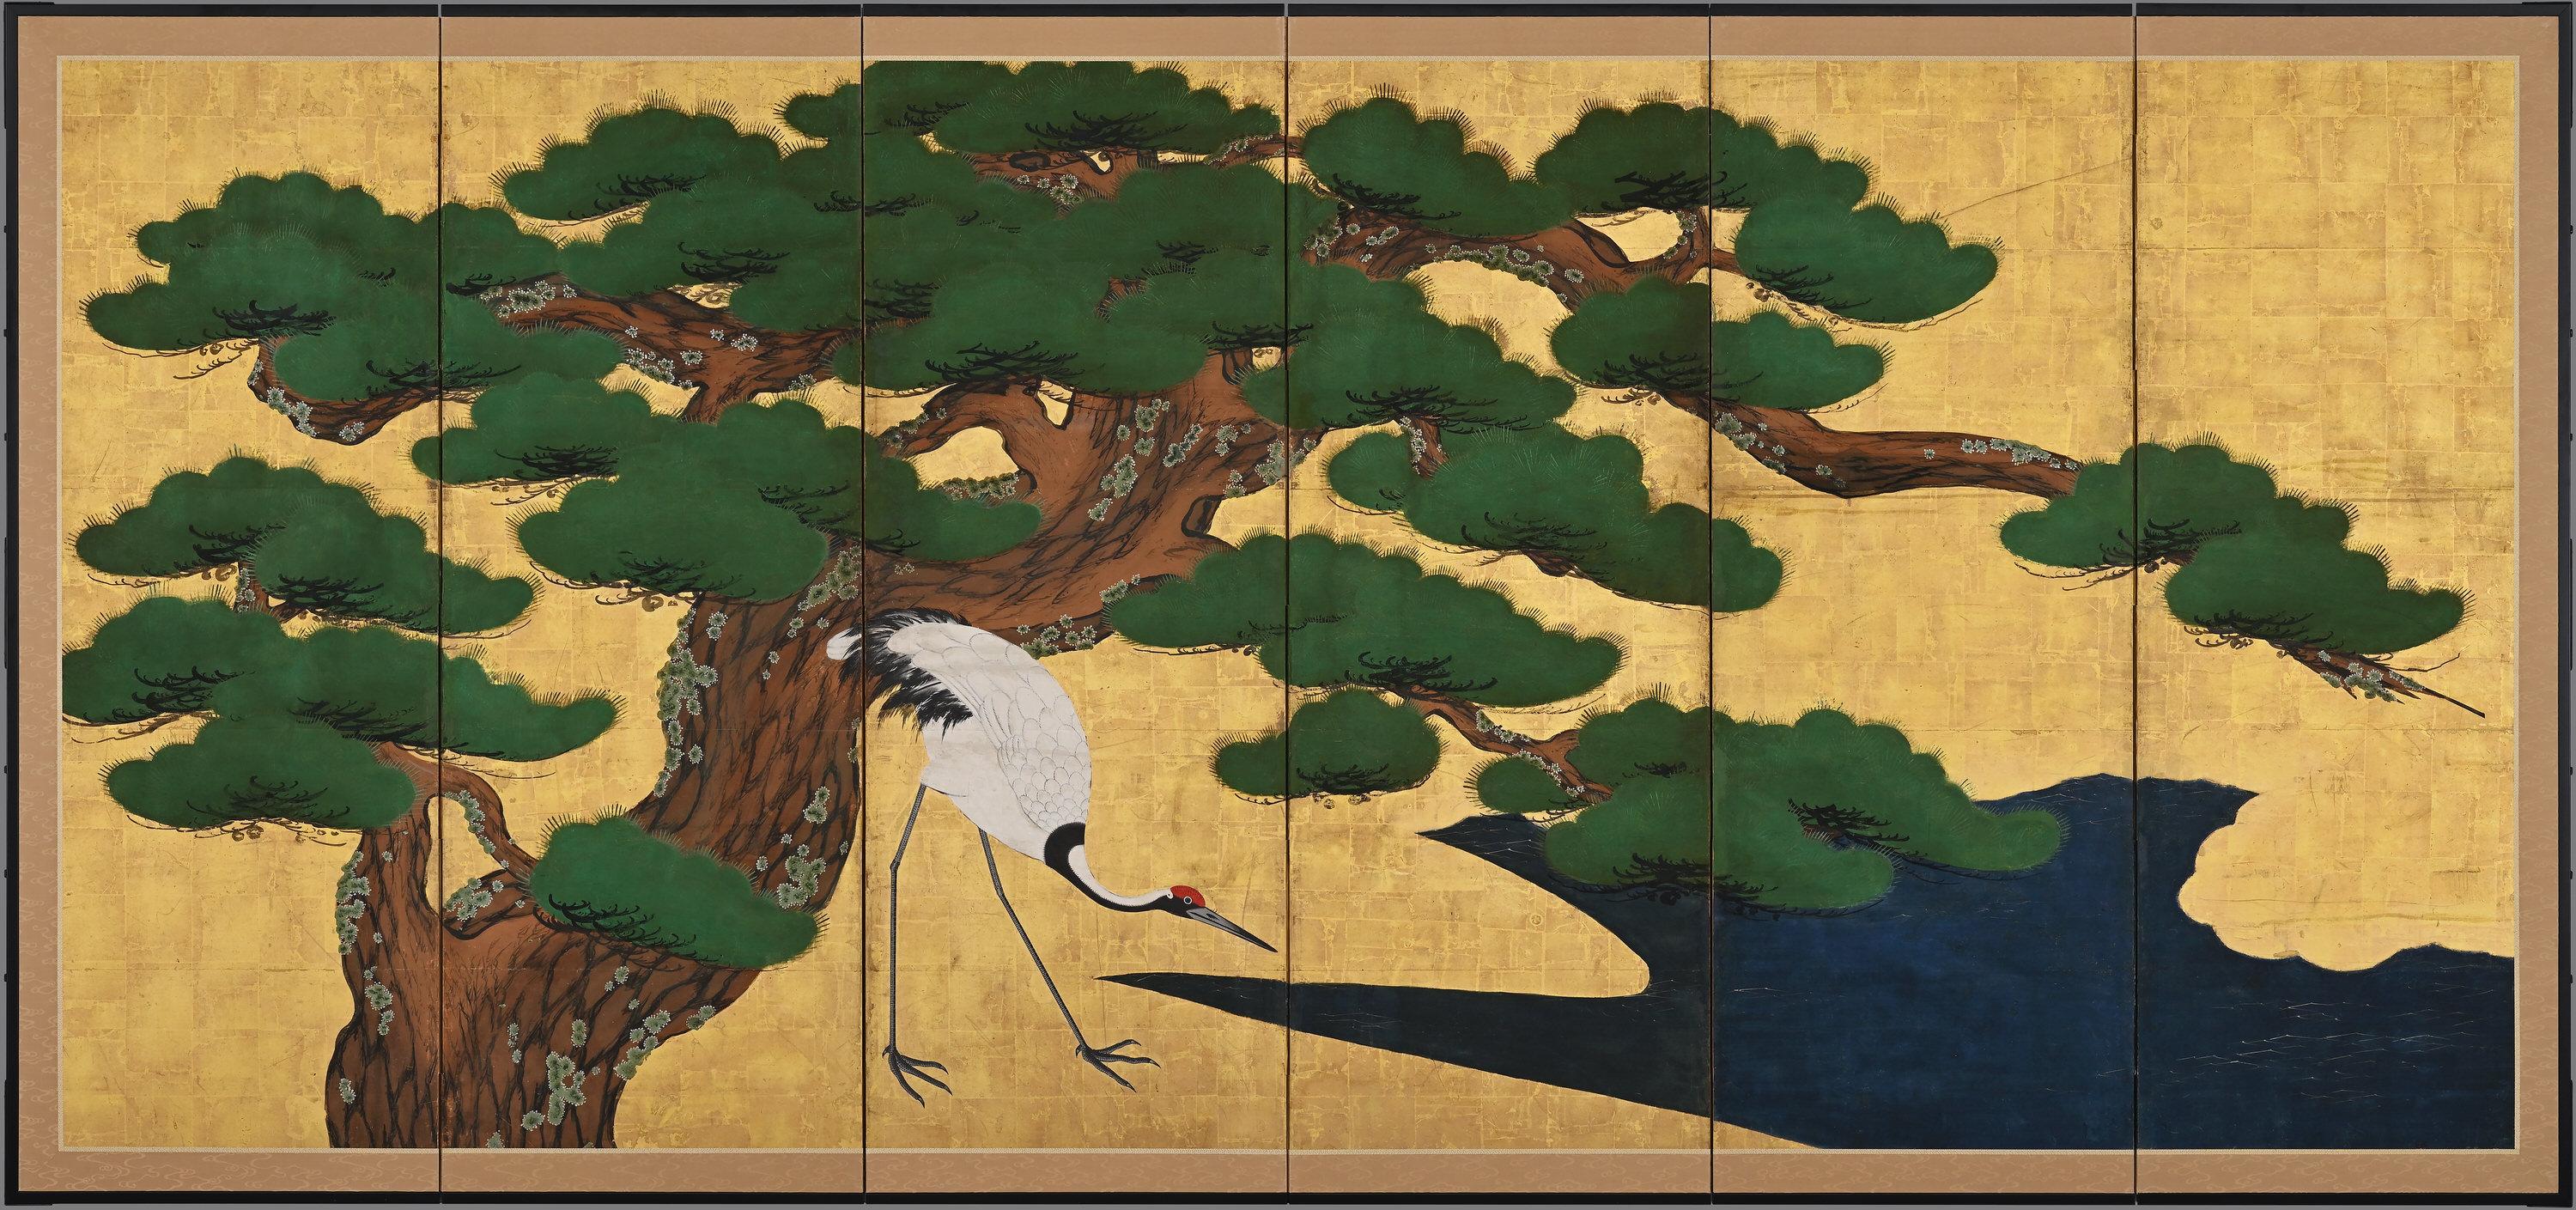 Pins et grues

Anonyme. École Kyoto Kano.

Fin du XVIIe/début du XVIIIe siècle, vers 1700.

Paire de paravents japonais à six panneaux.
Encre, gofun, pigment et feuille d'or sur papier.

Cette composition audacieuse présente deux pins